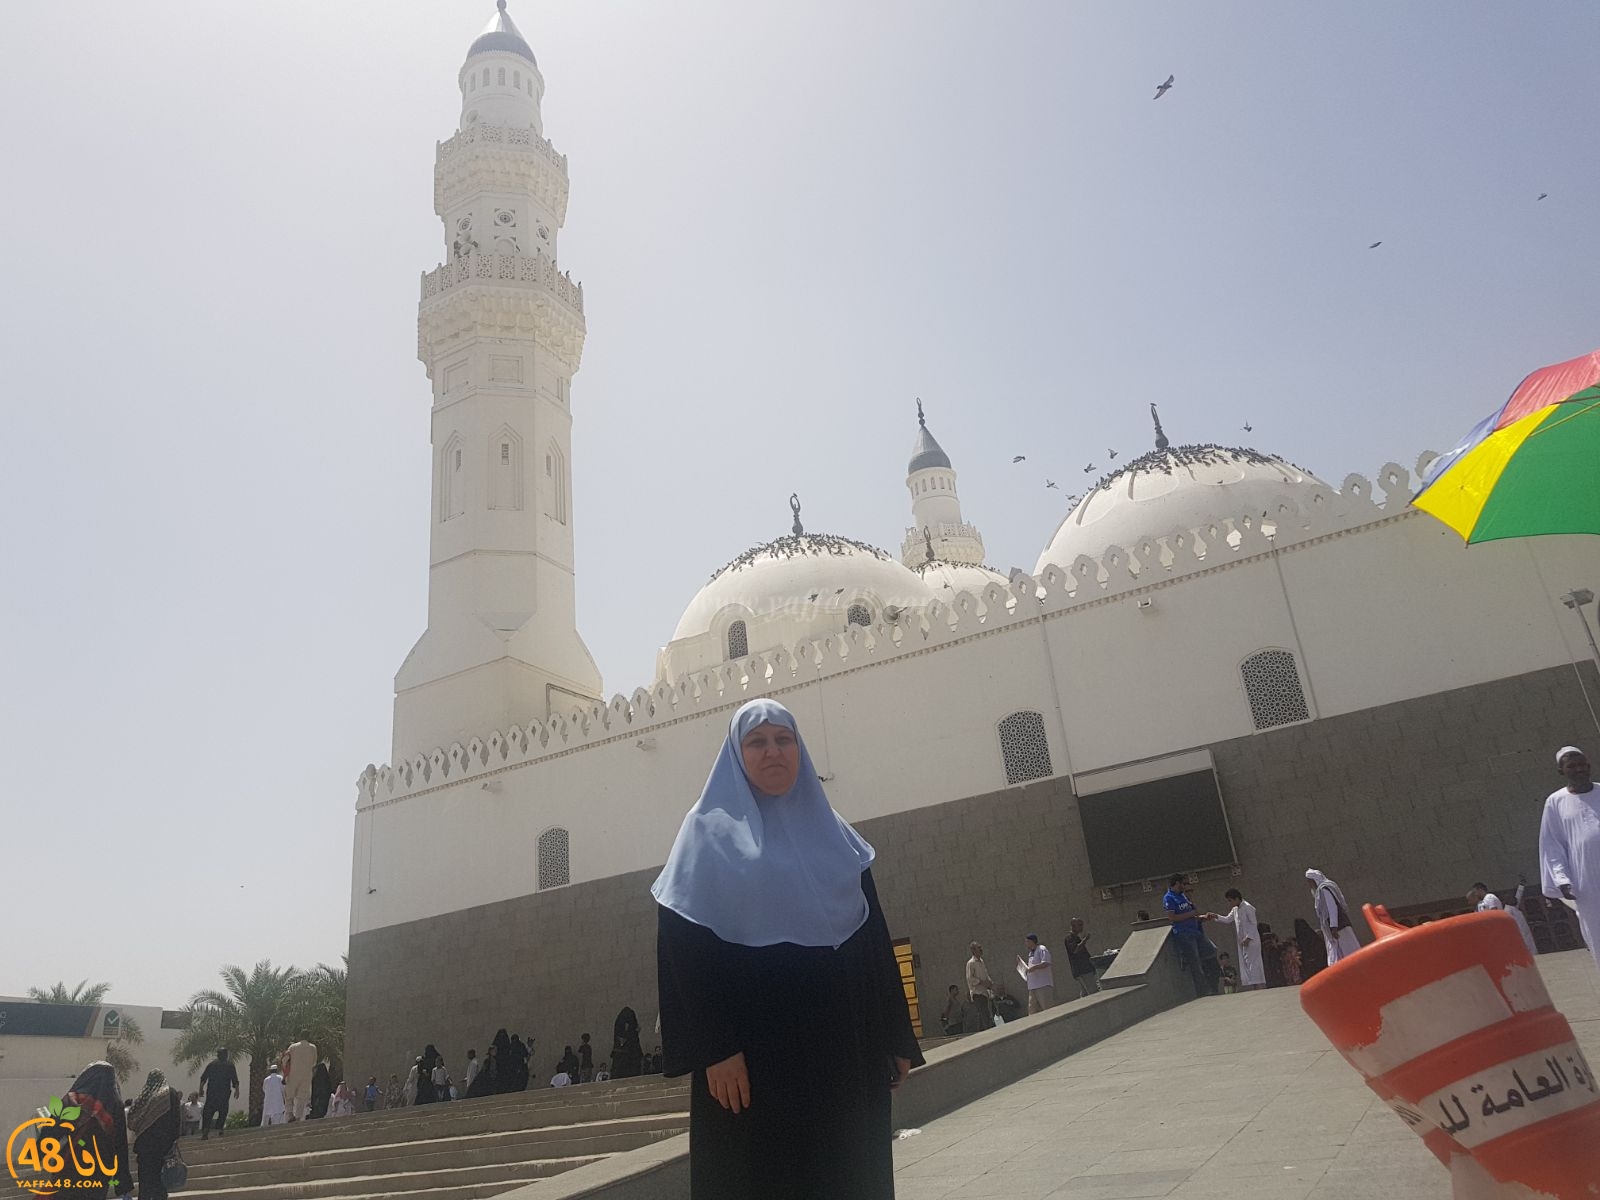  بالصور: معتمرو مدينة يافا يزورون الأماكن الاسلامية التاريخية في المدينة المنورة